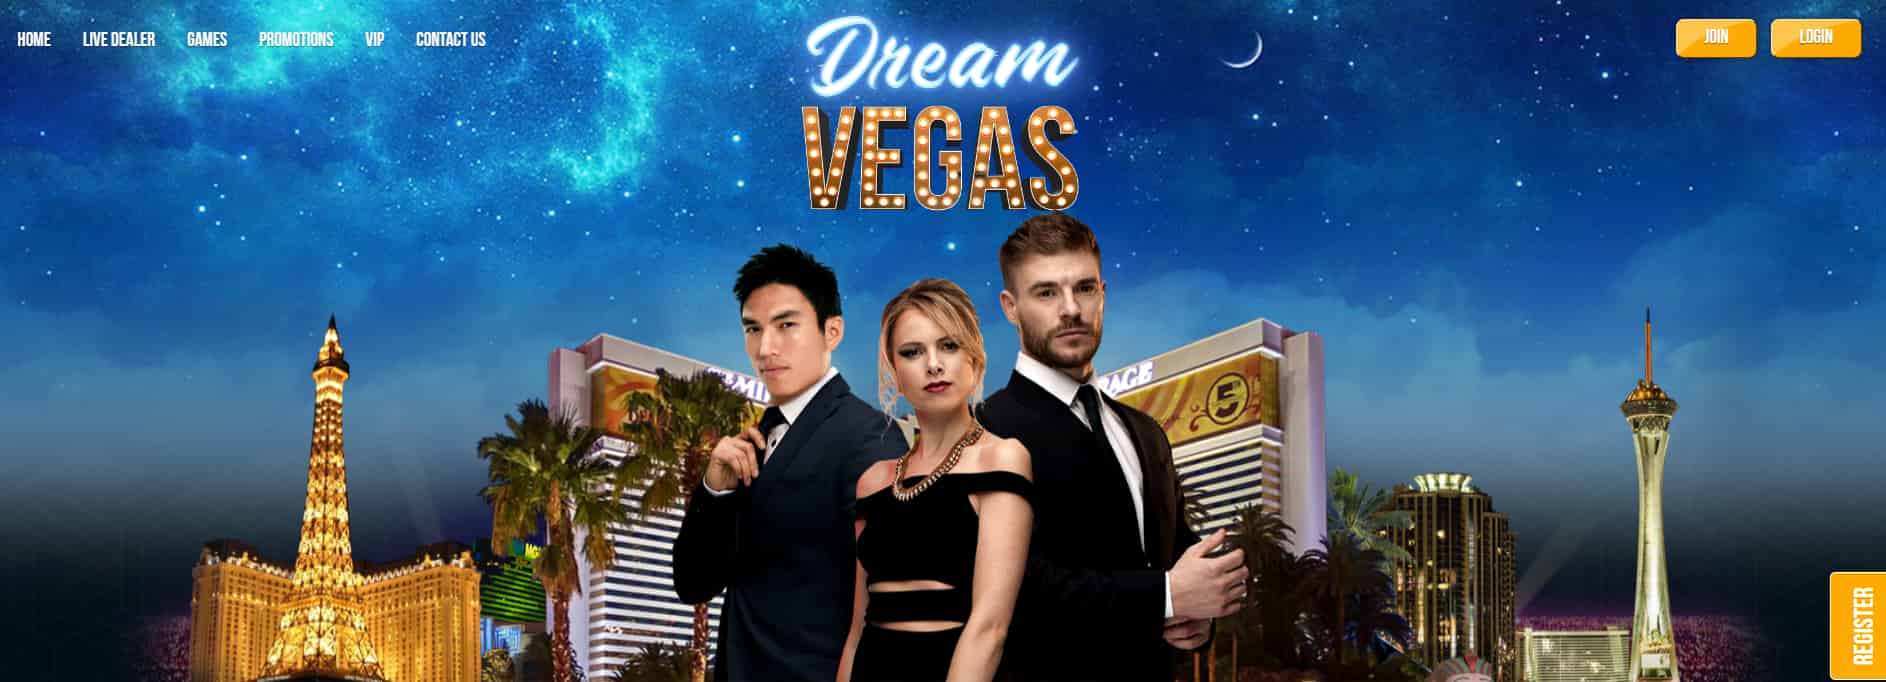 dream vegas review